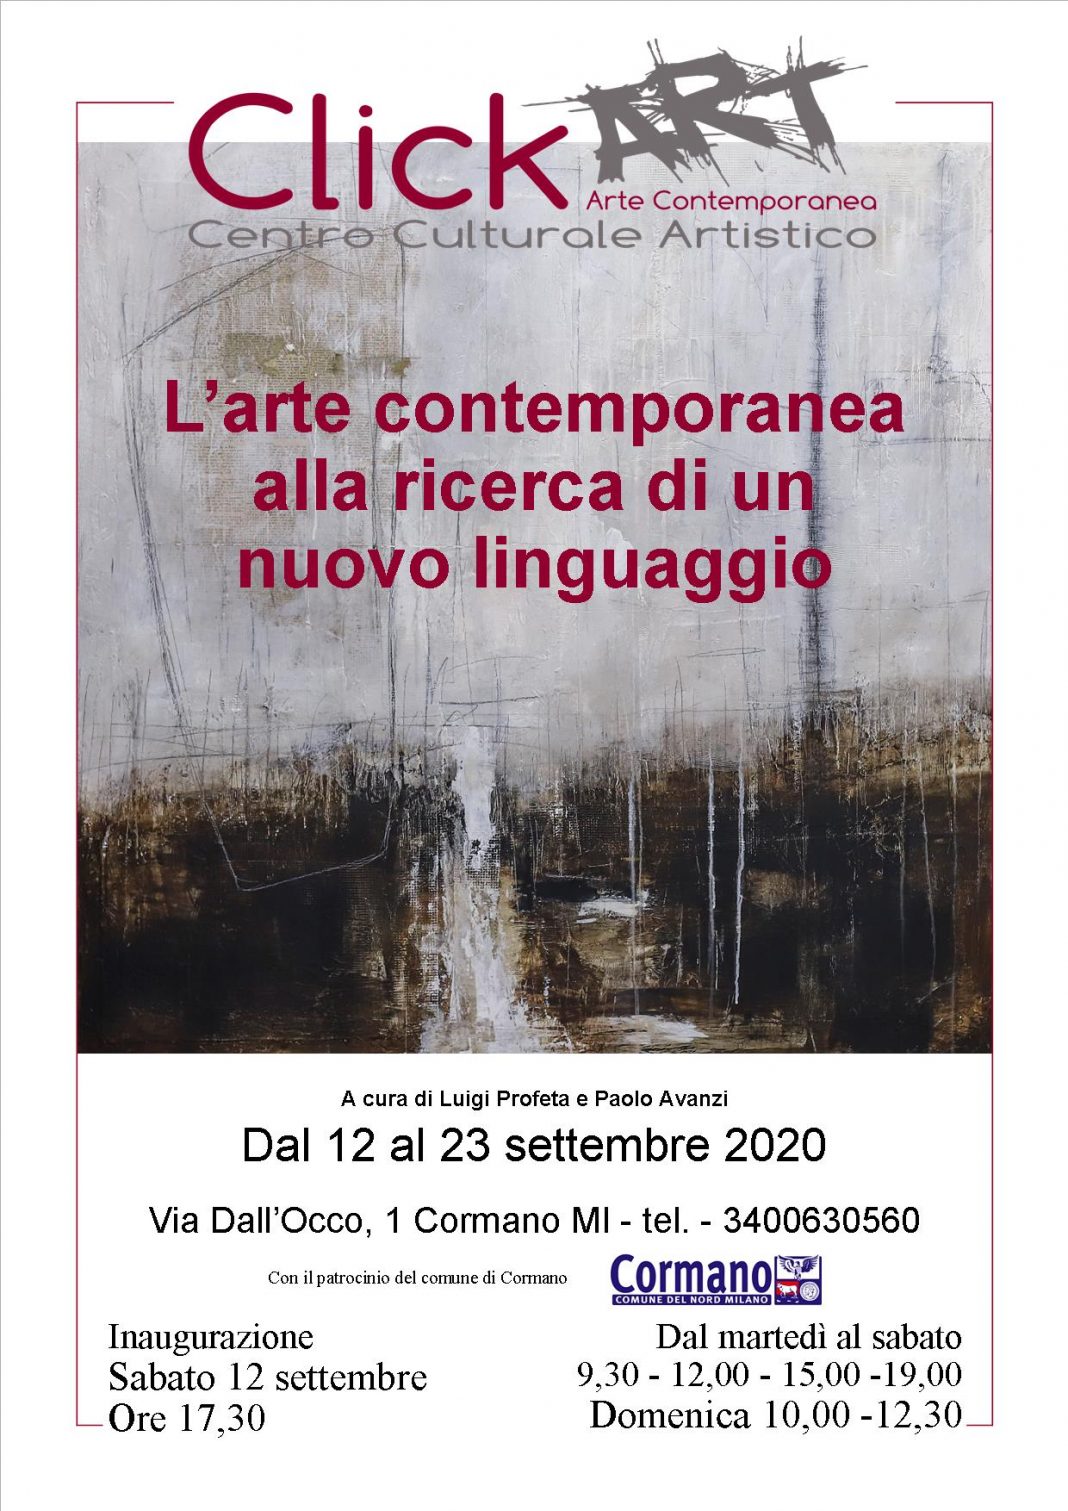 L’arte contemporanea alla ricerca di un nuovo linguaggiohttps://www.exibart.com/repository/media/formidable/11/Locandina-larte-contemporanea-alla-ricerca-di-un-nuovo-linguaggio-1068x1511.jpg